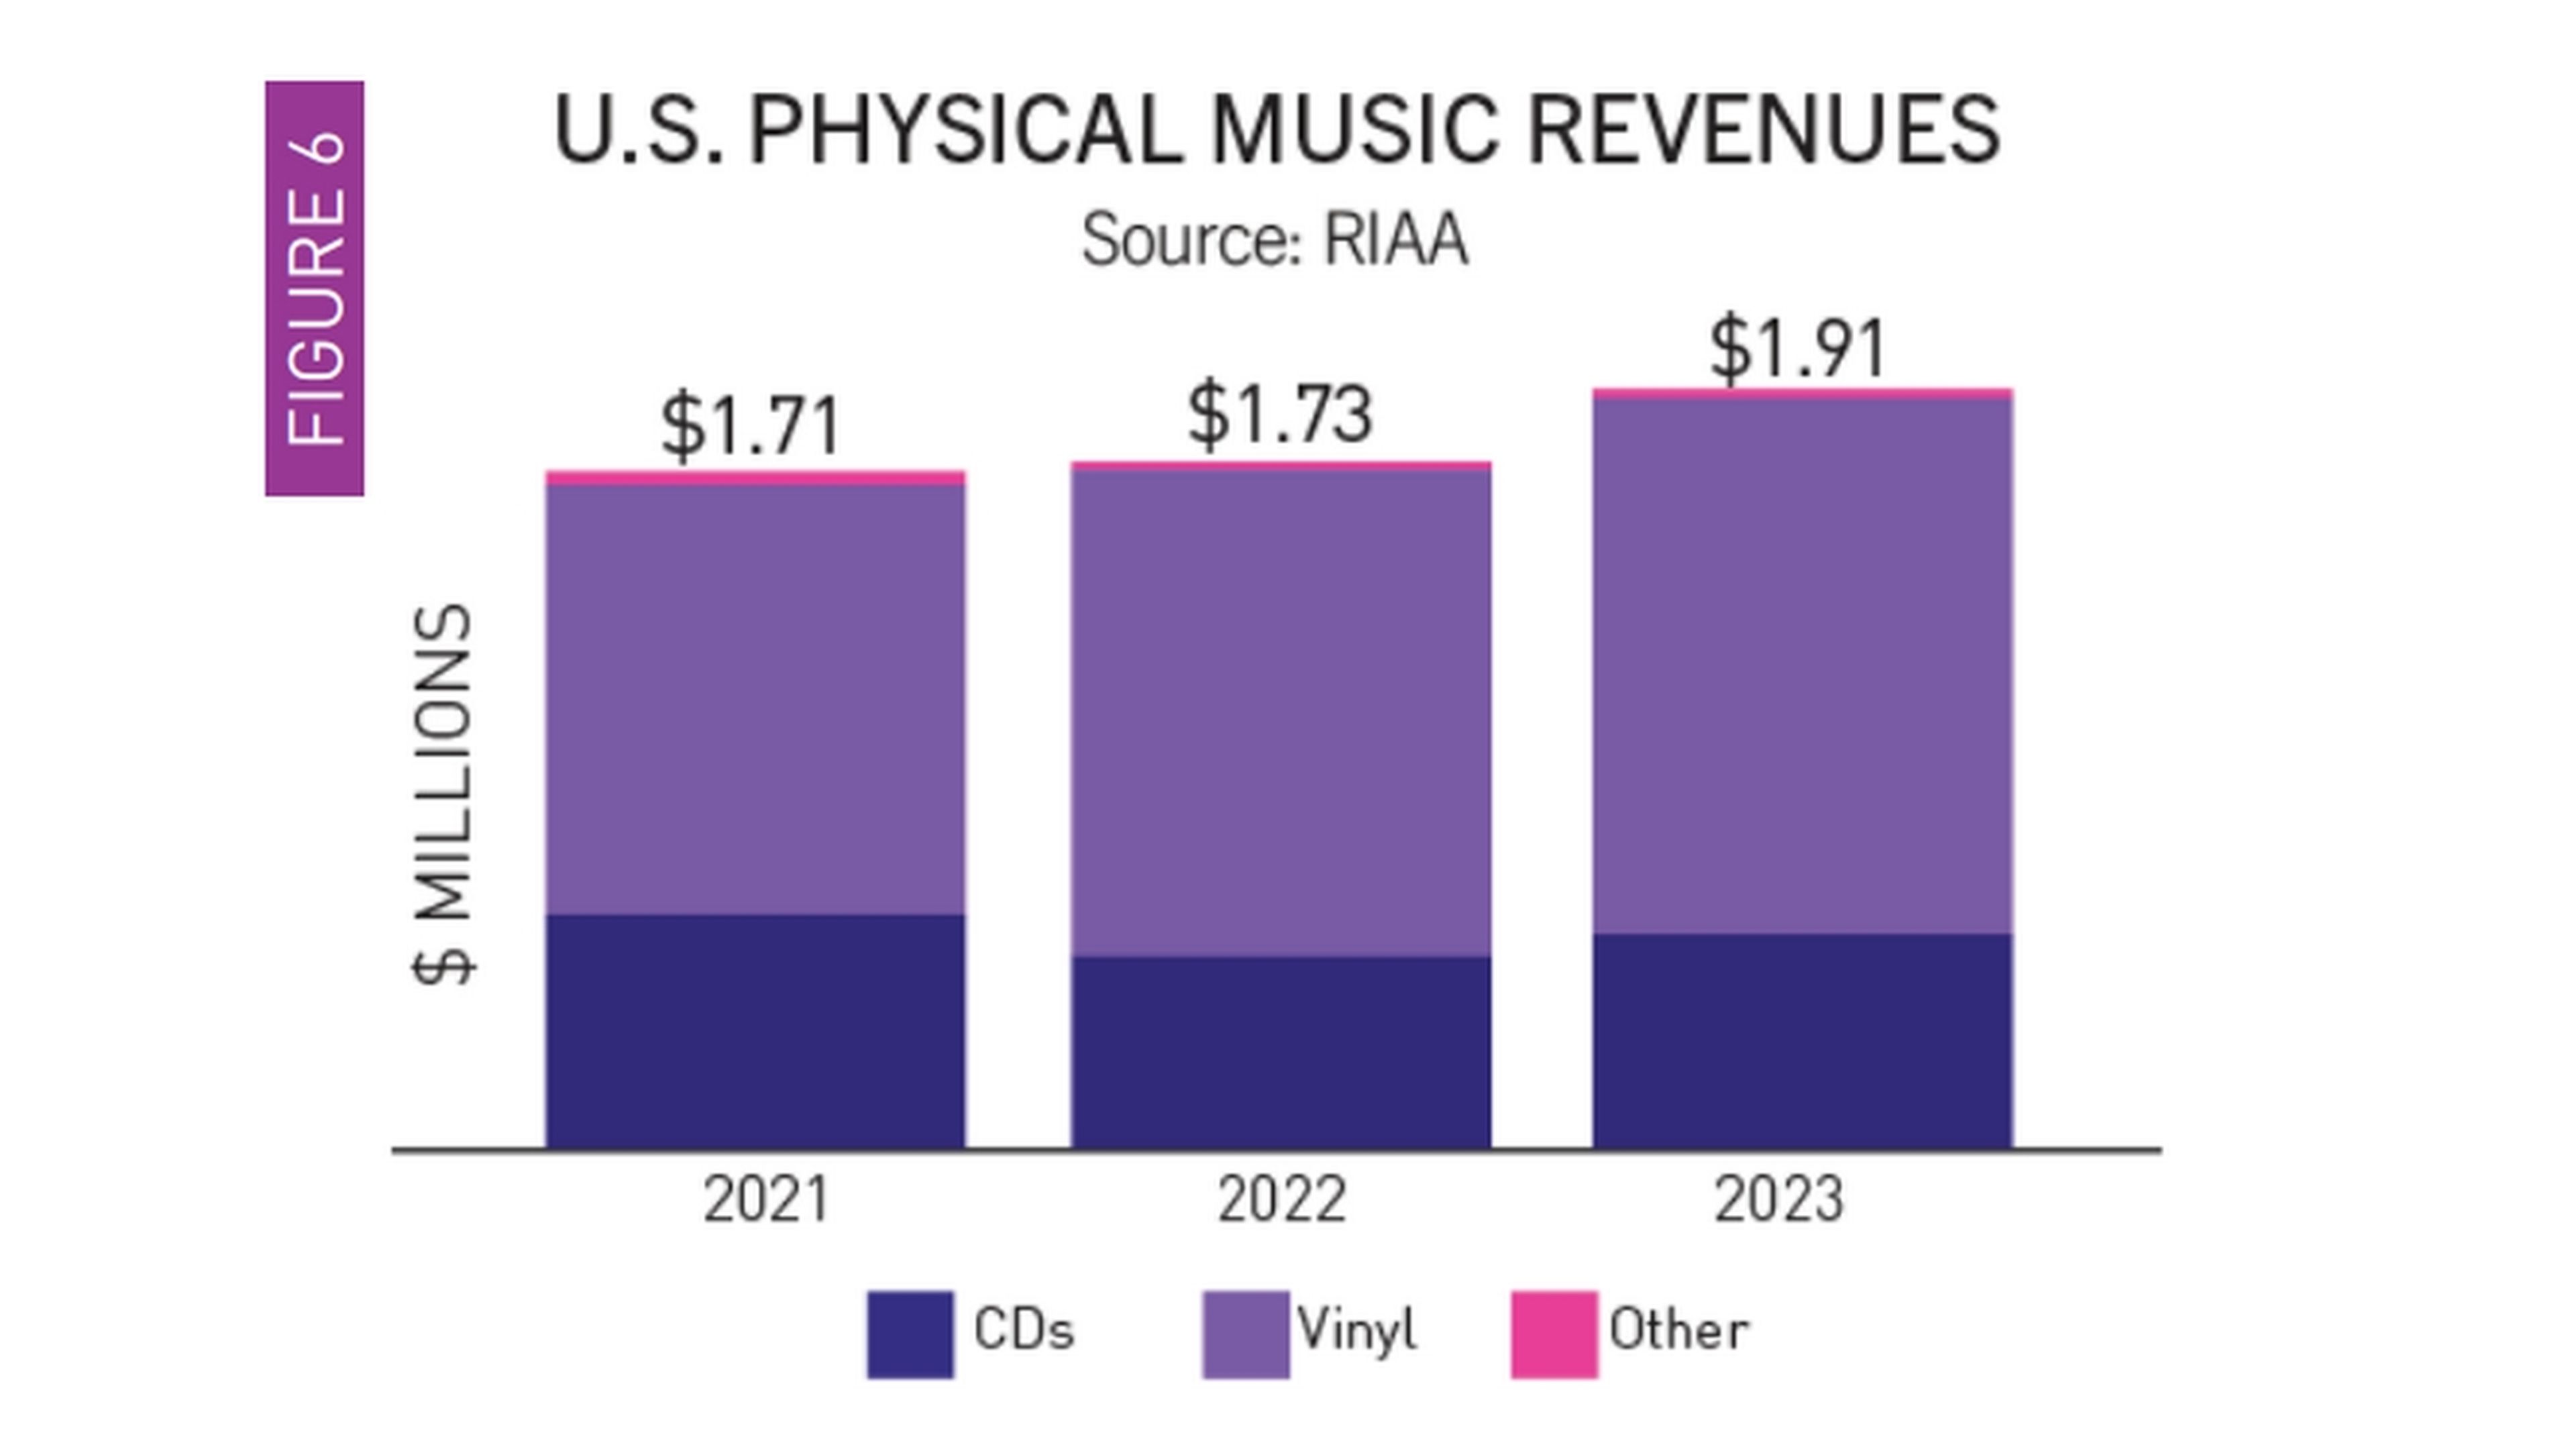 Ventas de los formatos físicos musicales en 2023